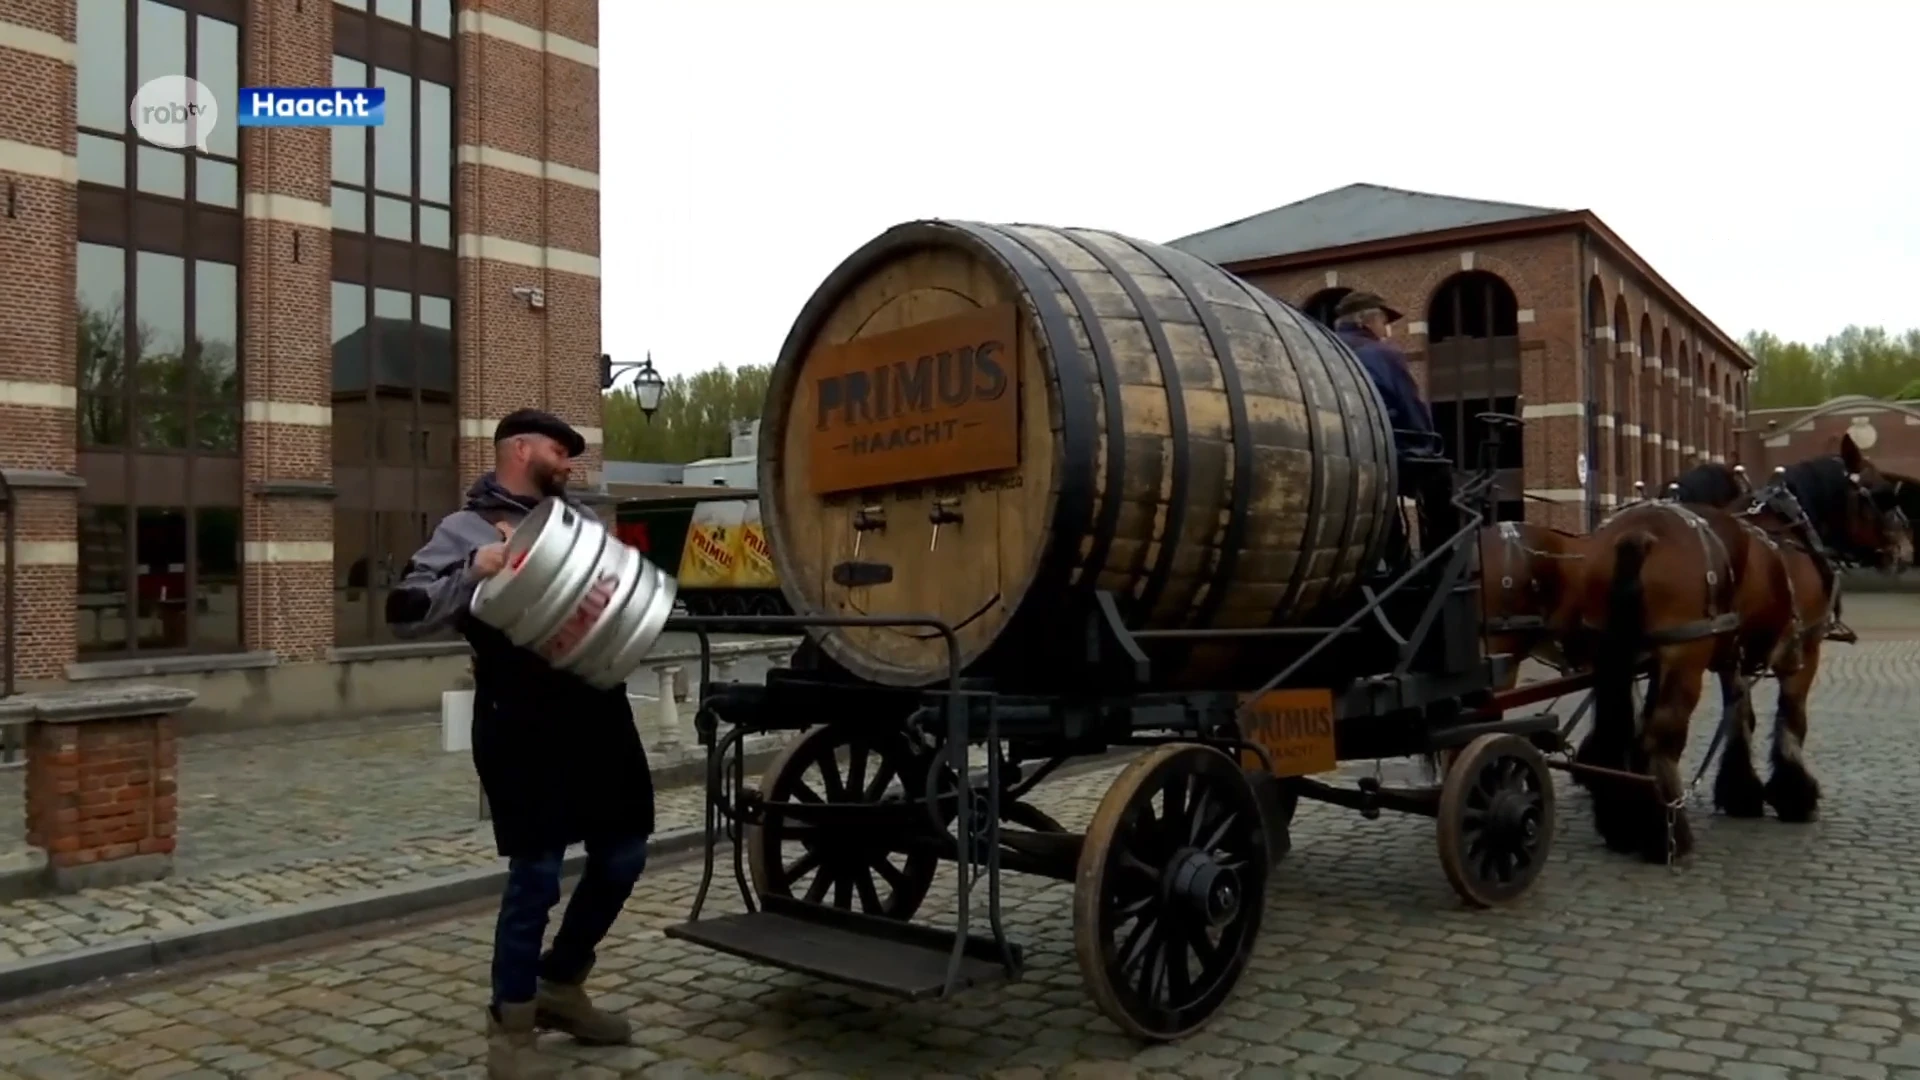 Brouwerij Haacht brengt eerste vat Primus met paard en kar tot aan het café